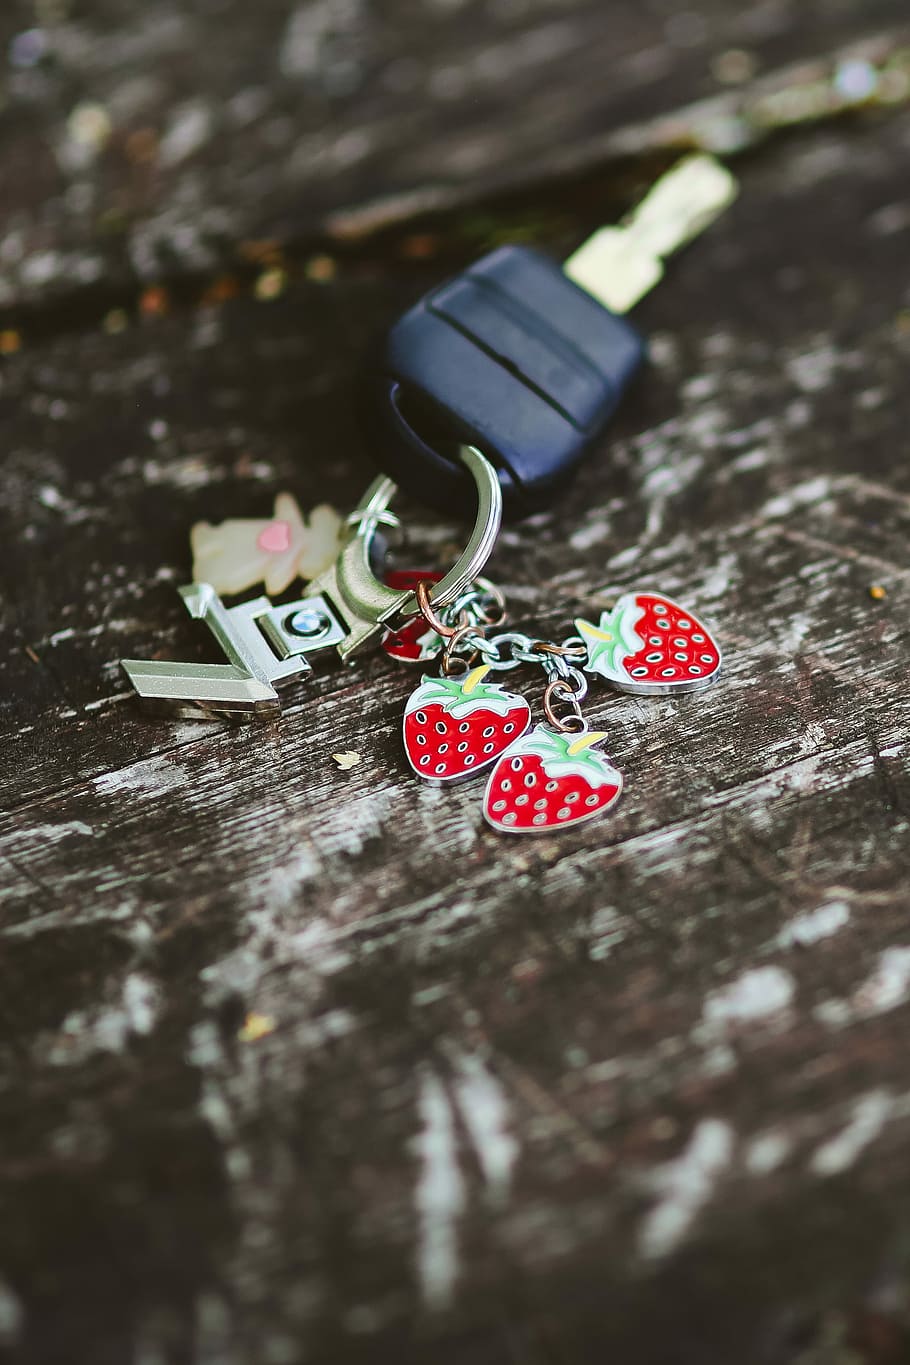 chave, anel, morangos, chaveiro, de madeira, madeira, chave do carro, madeira - material, vermelho, forma de coração